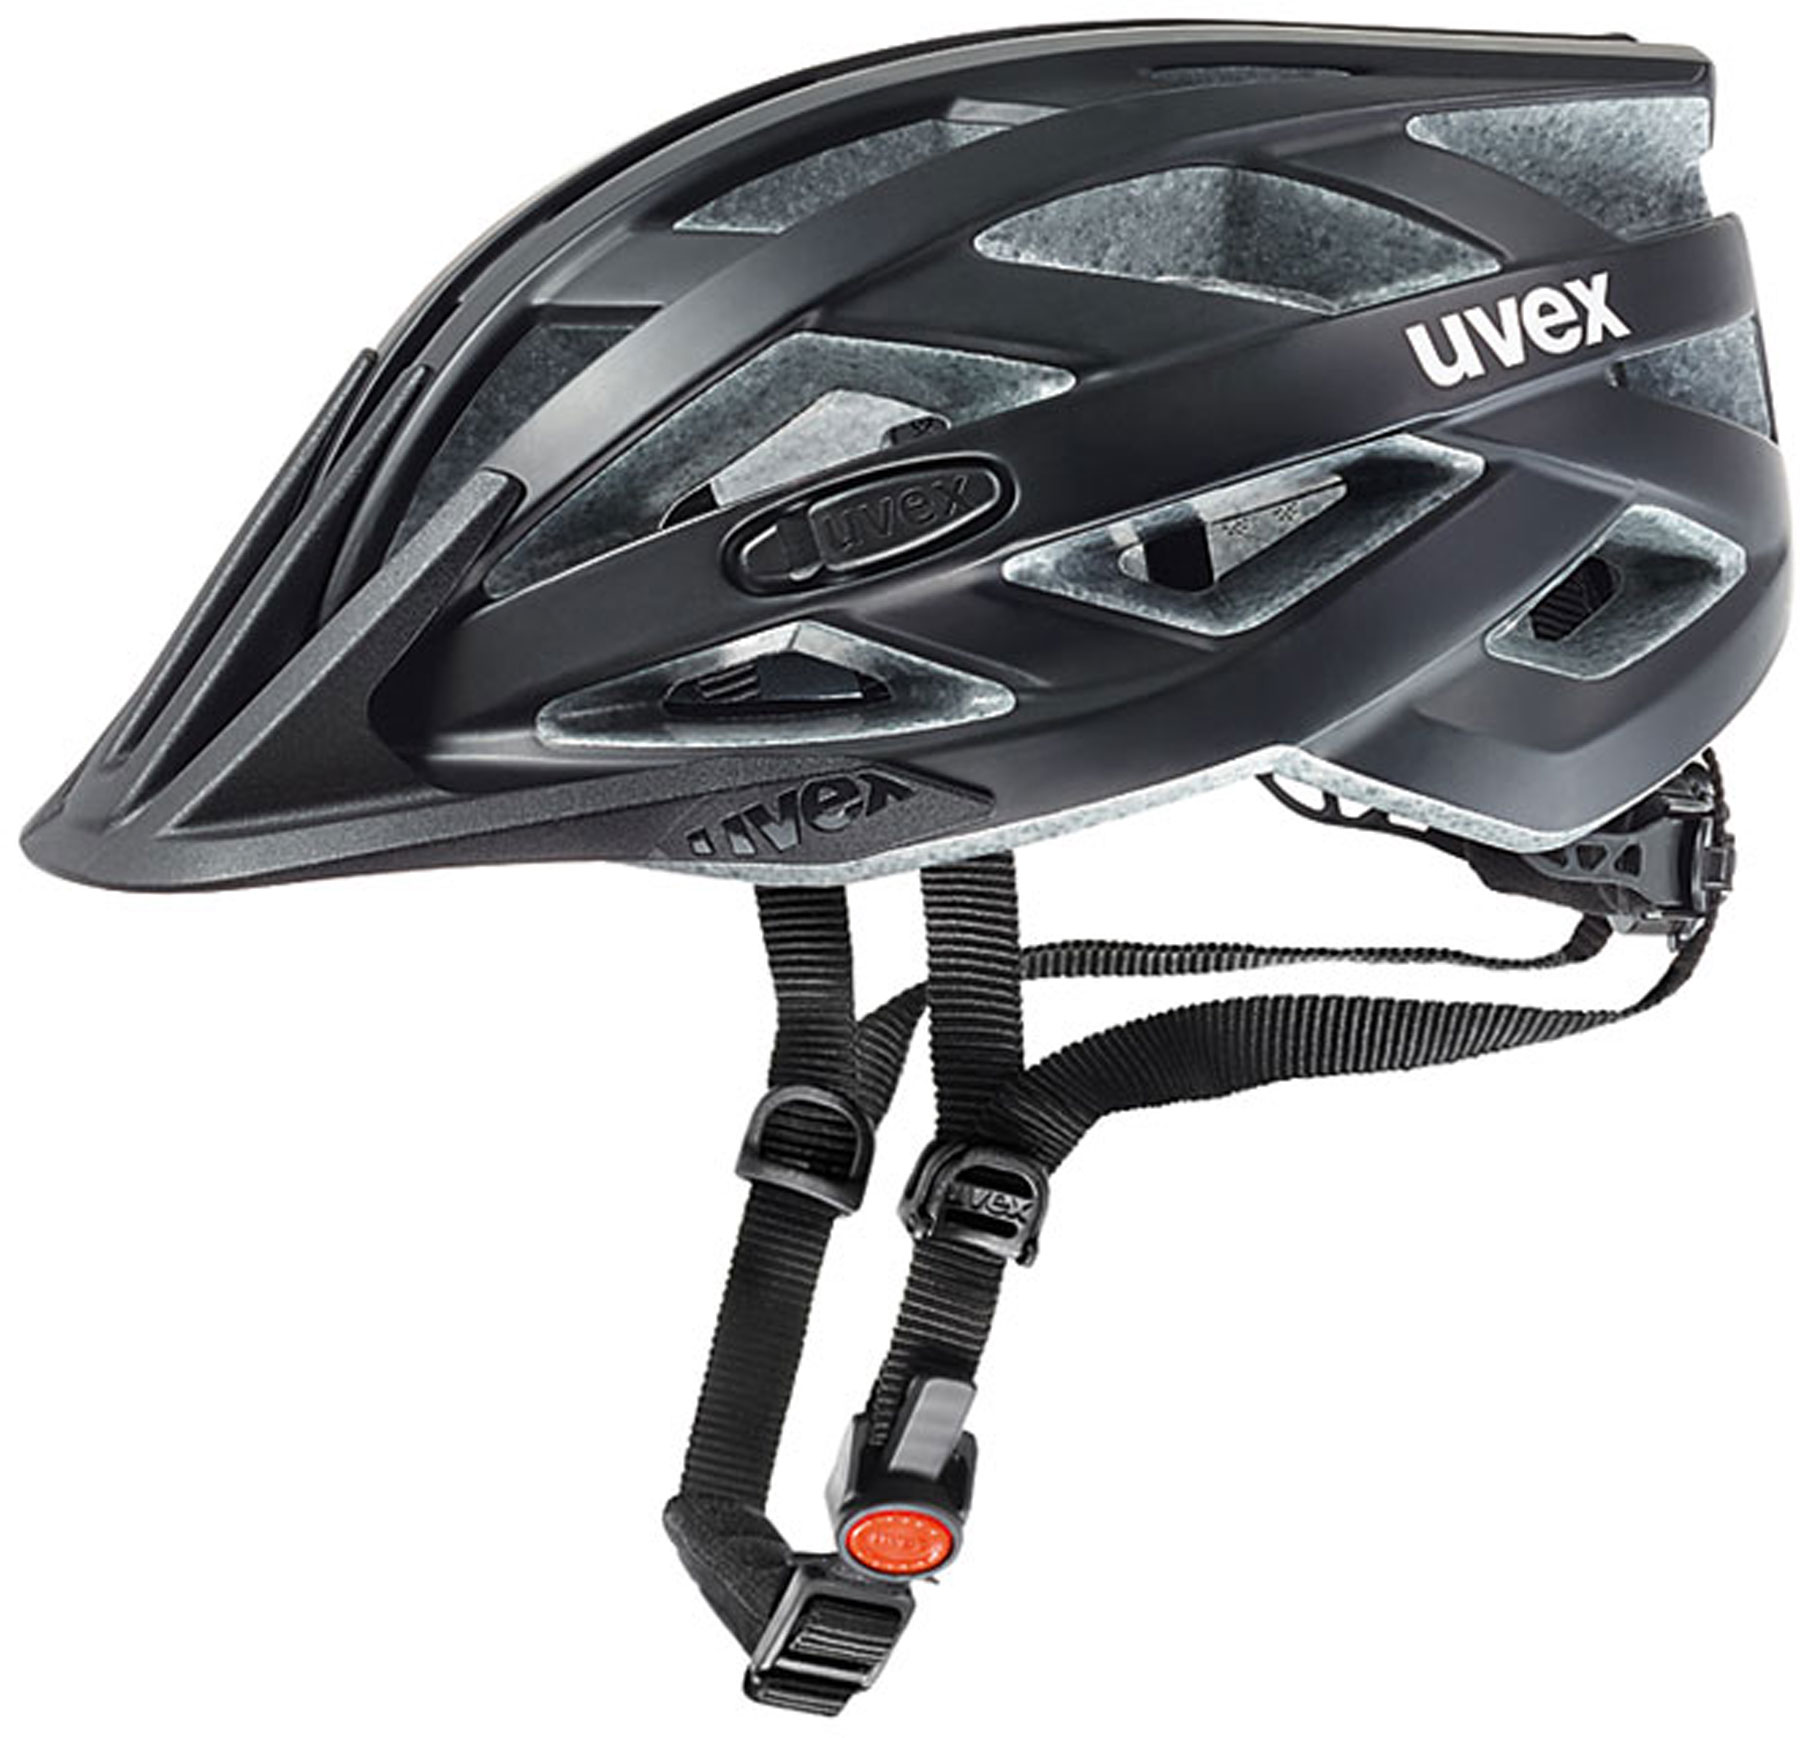 Kask rowerowy Uvex i-vo cc